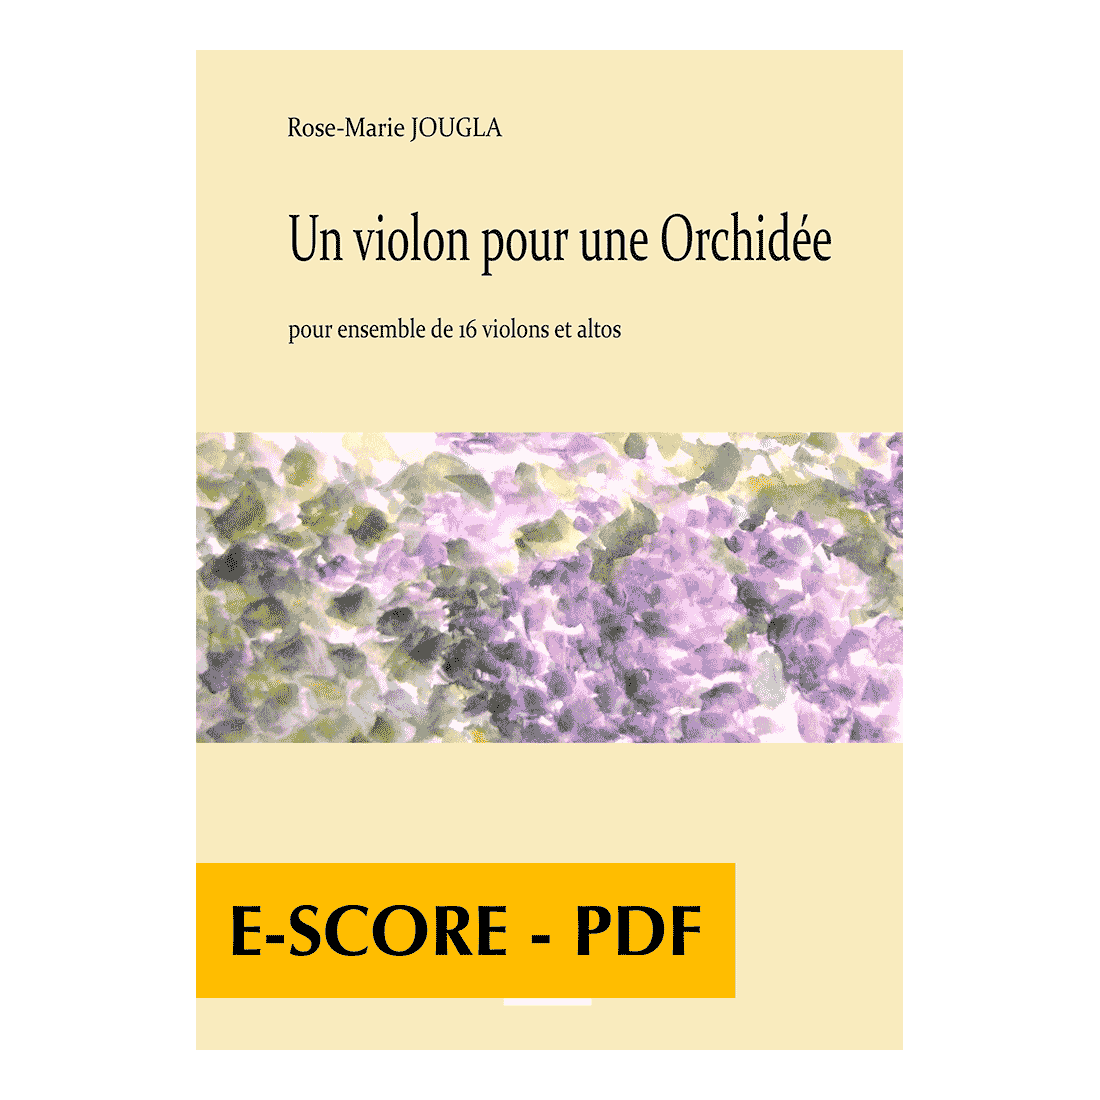 Un violon pour une Orchidée für 16 Violinen und  Bratschen - E-score PDF